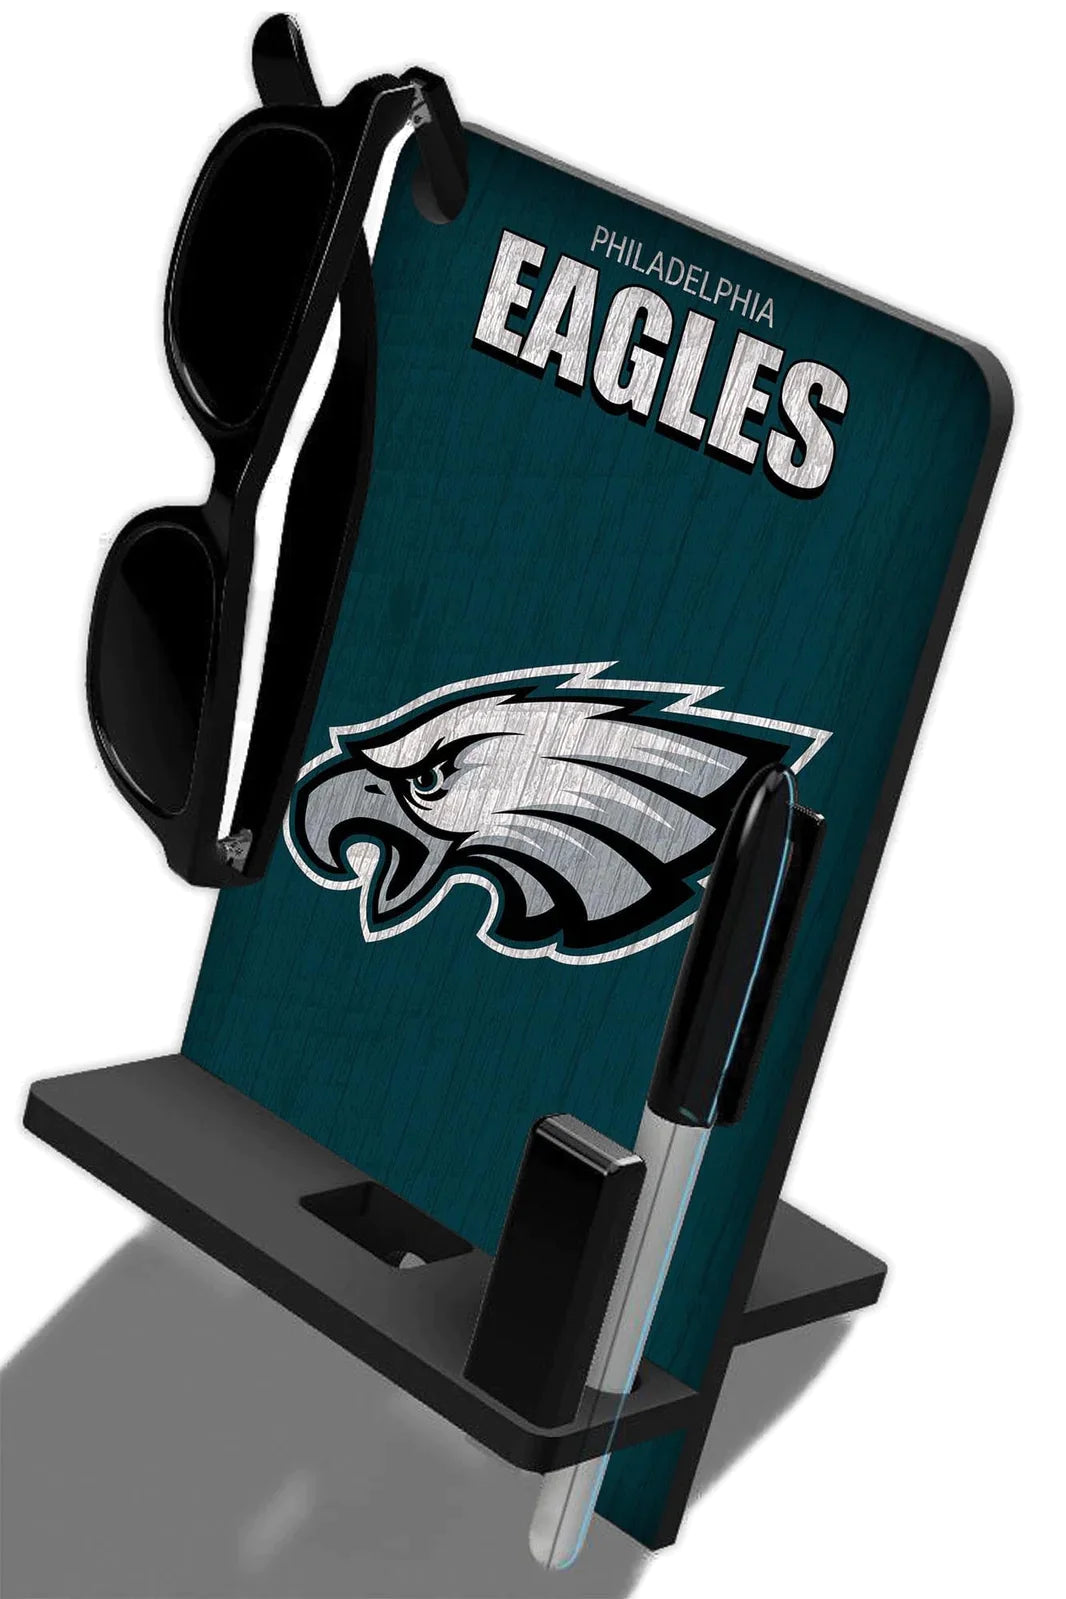 Base de escritorio para Celular Phone Stand NFL Eagles